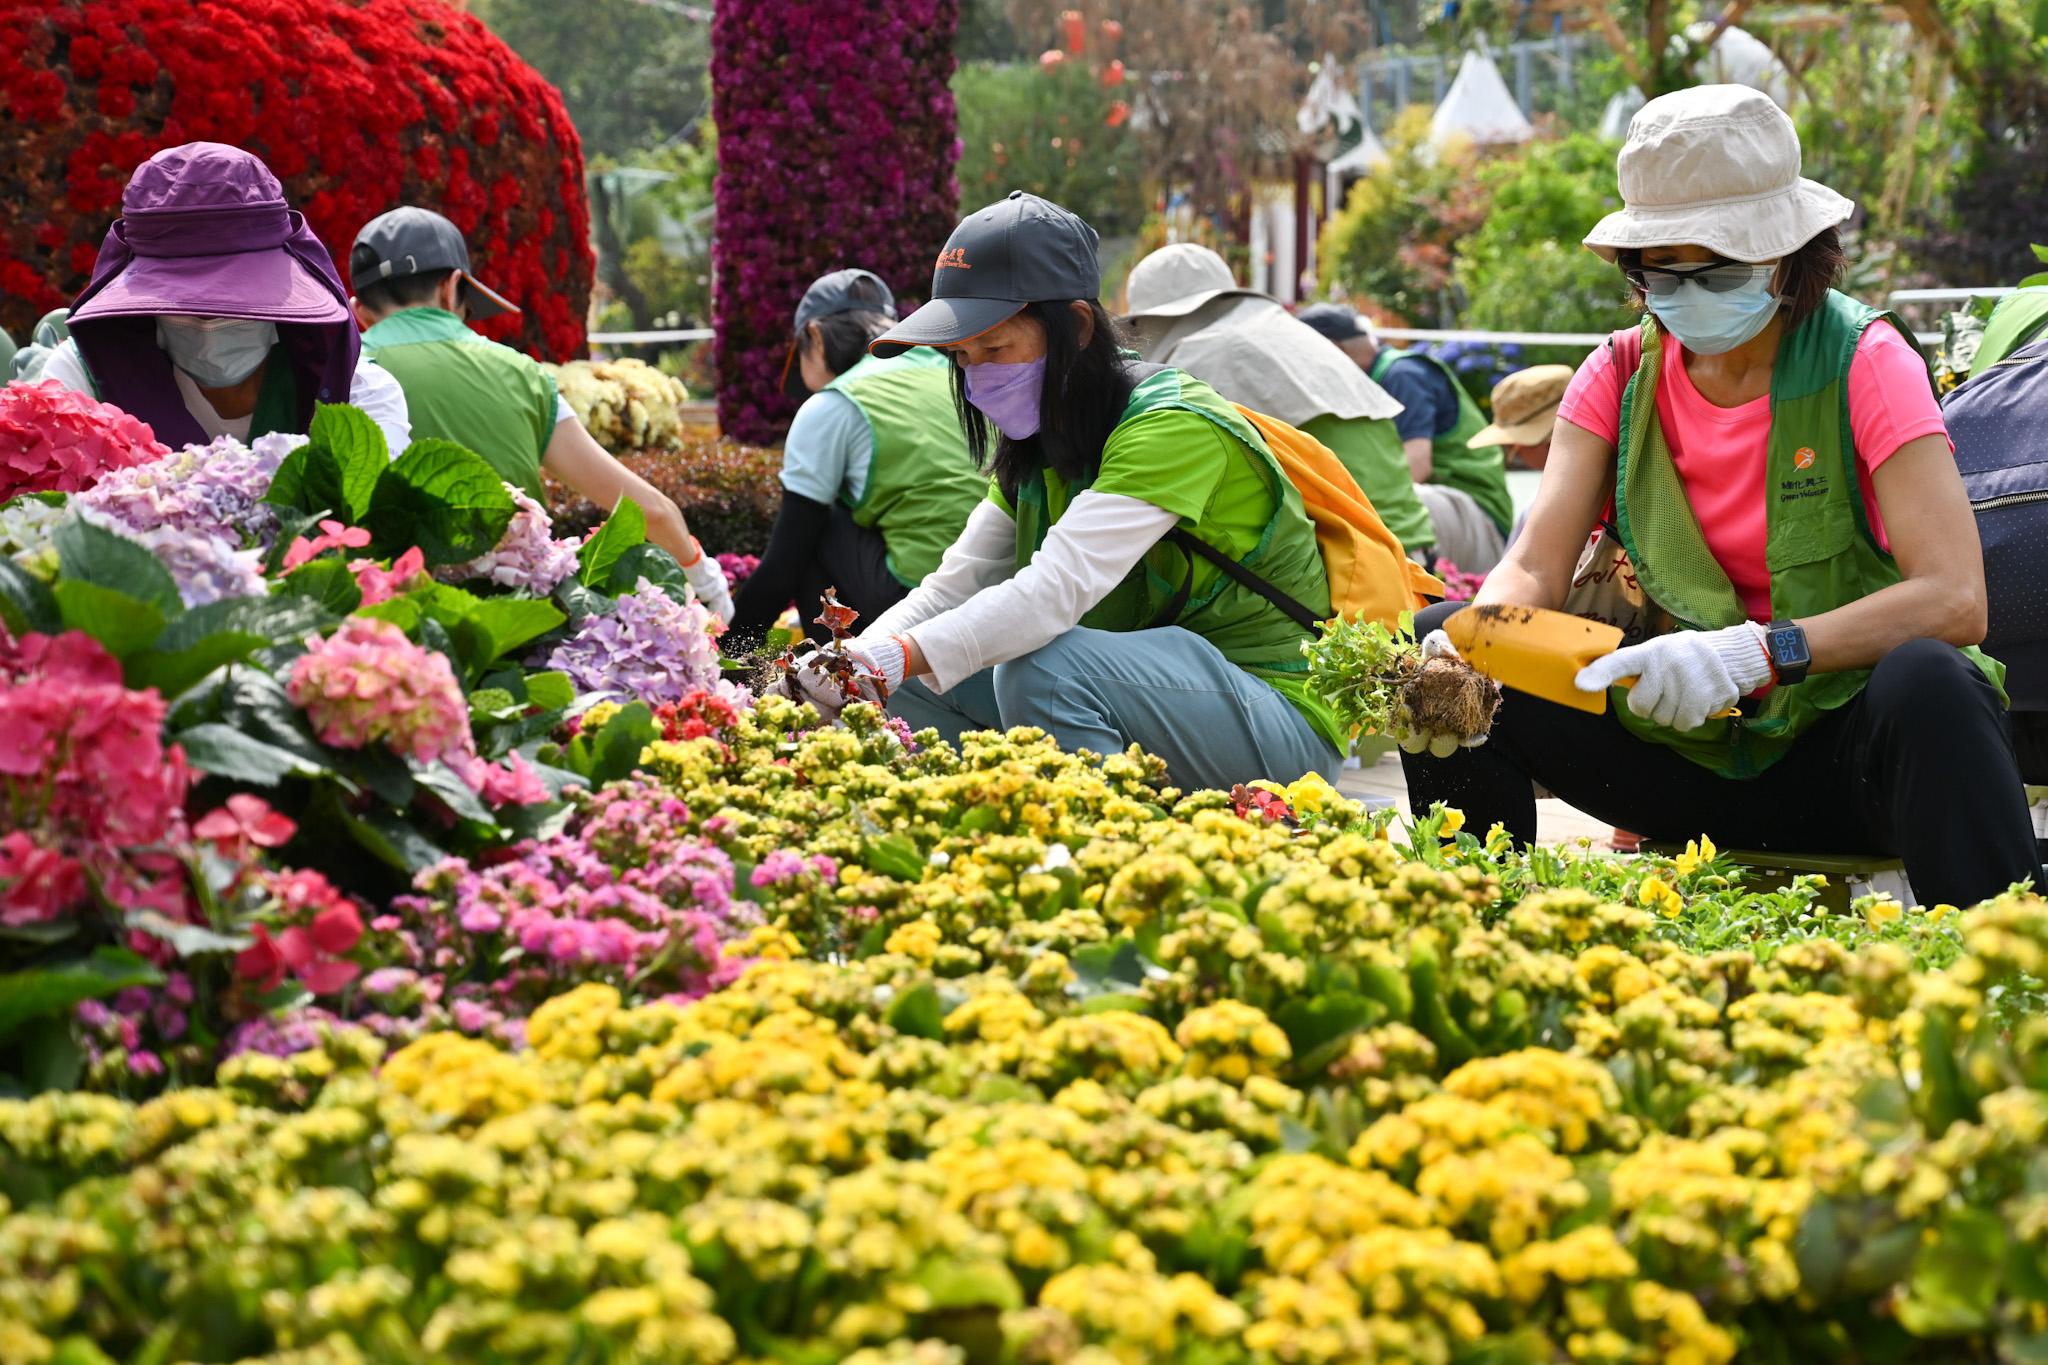 今年的香港花卉展览（花展）已经圆满结束。康乐及文化事务署再接再厉，于花展闭幕后两天，即今日及明日（三月二十五日及二十六日）在维多利亚公园举办环保回收日，加强实行环保措施和减少废物弃置。图示义工于会场协助分类并回收花卉。
